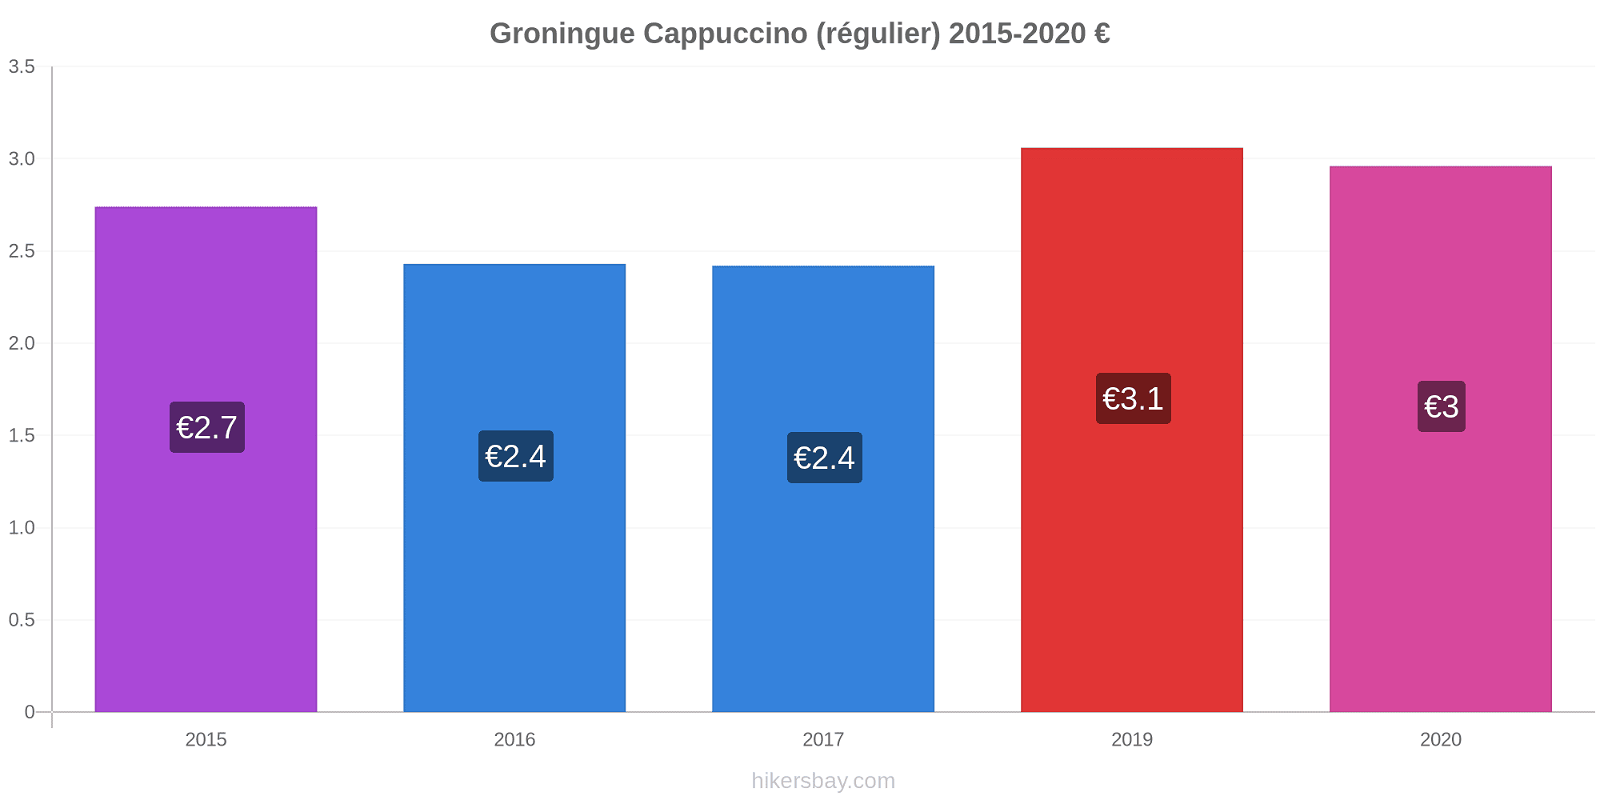 Groningue changements de prix Cappuccino (régulier) hikersbay.com